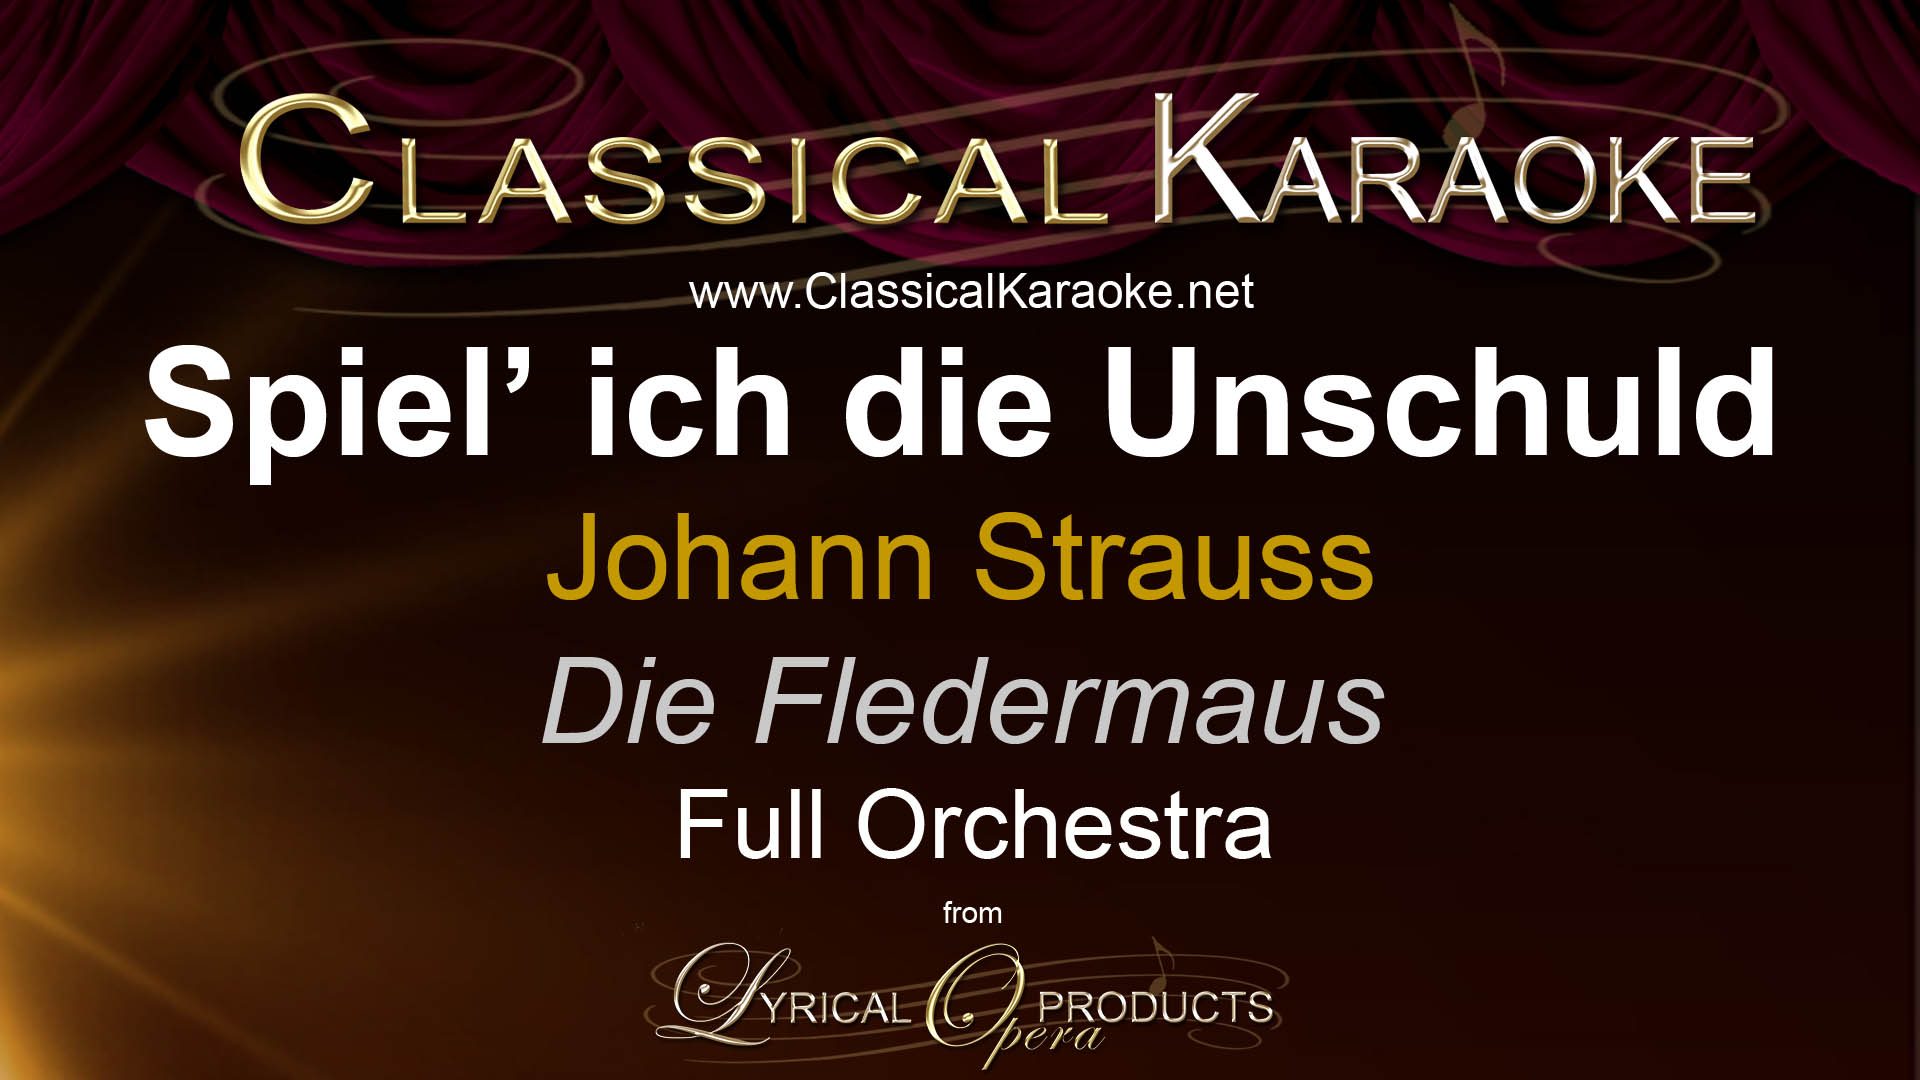 Spiel' ich die Unschuld, Die Fledermaus, Johann Strauss, Full Orchestral Accompaniment (karaoke) track